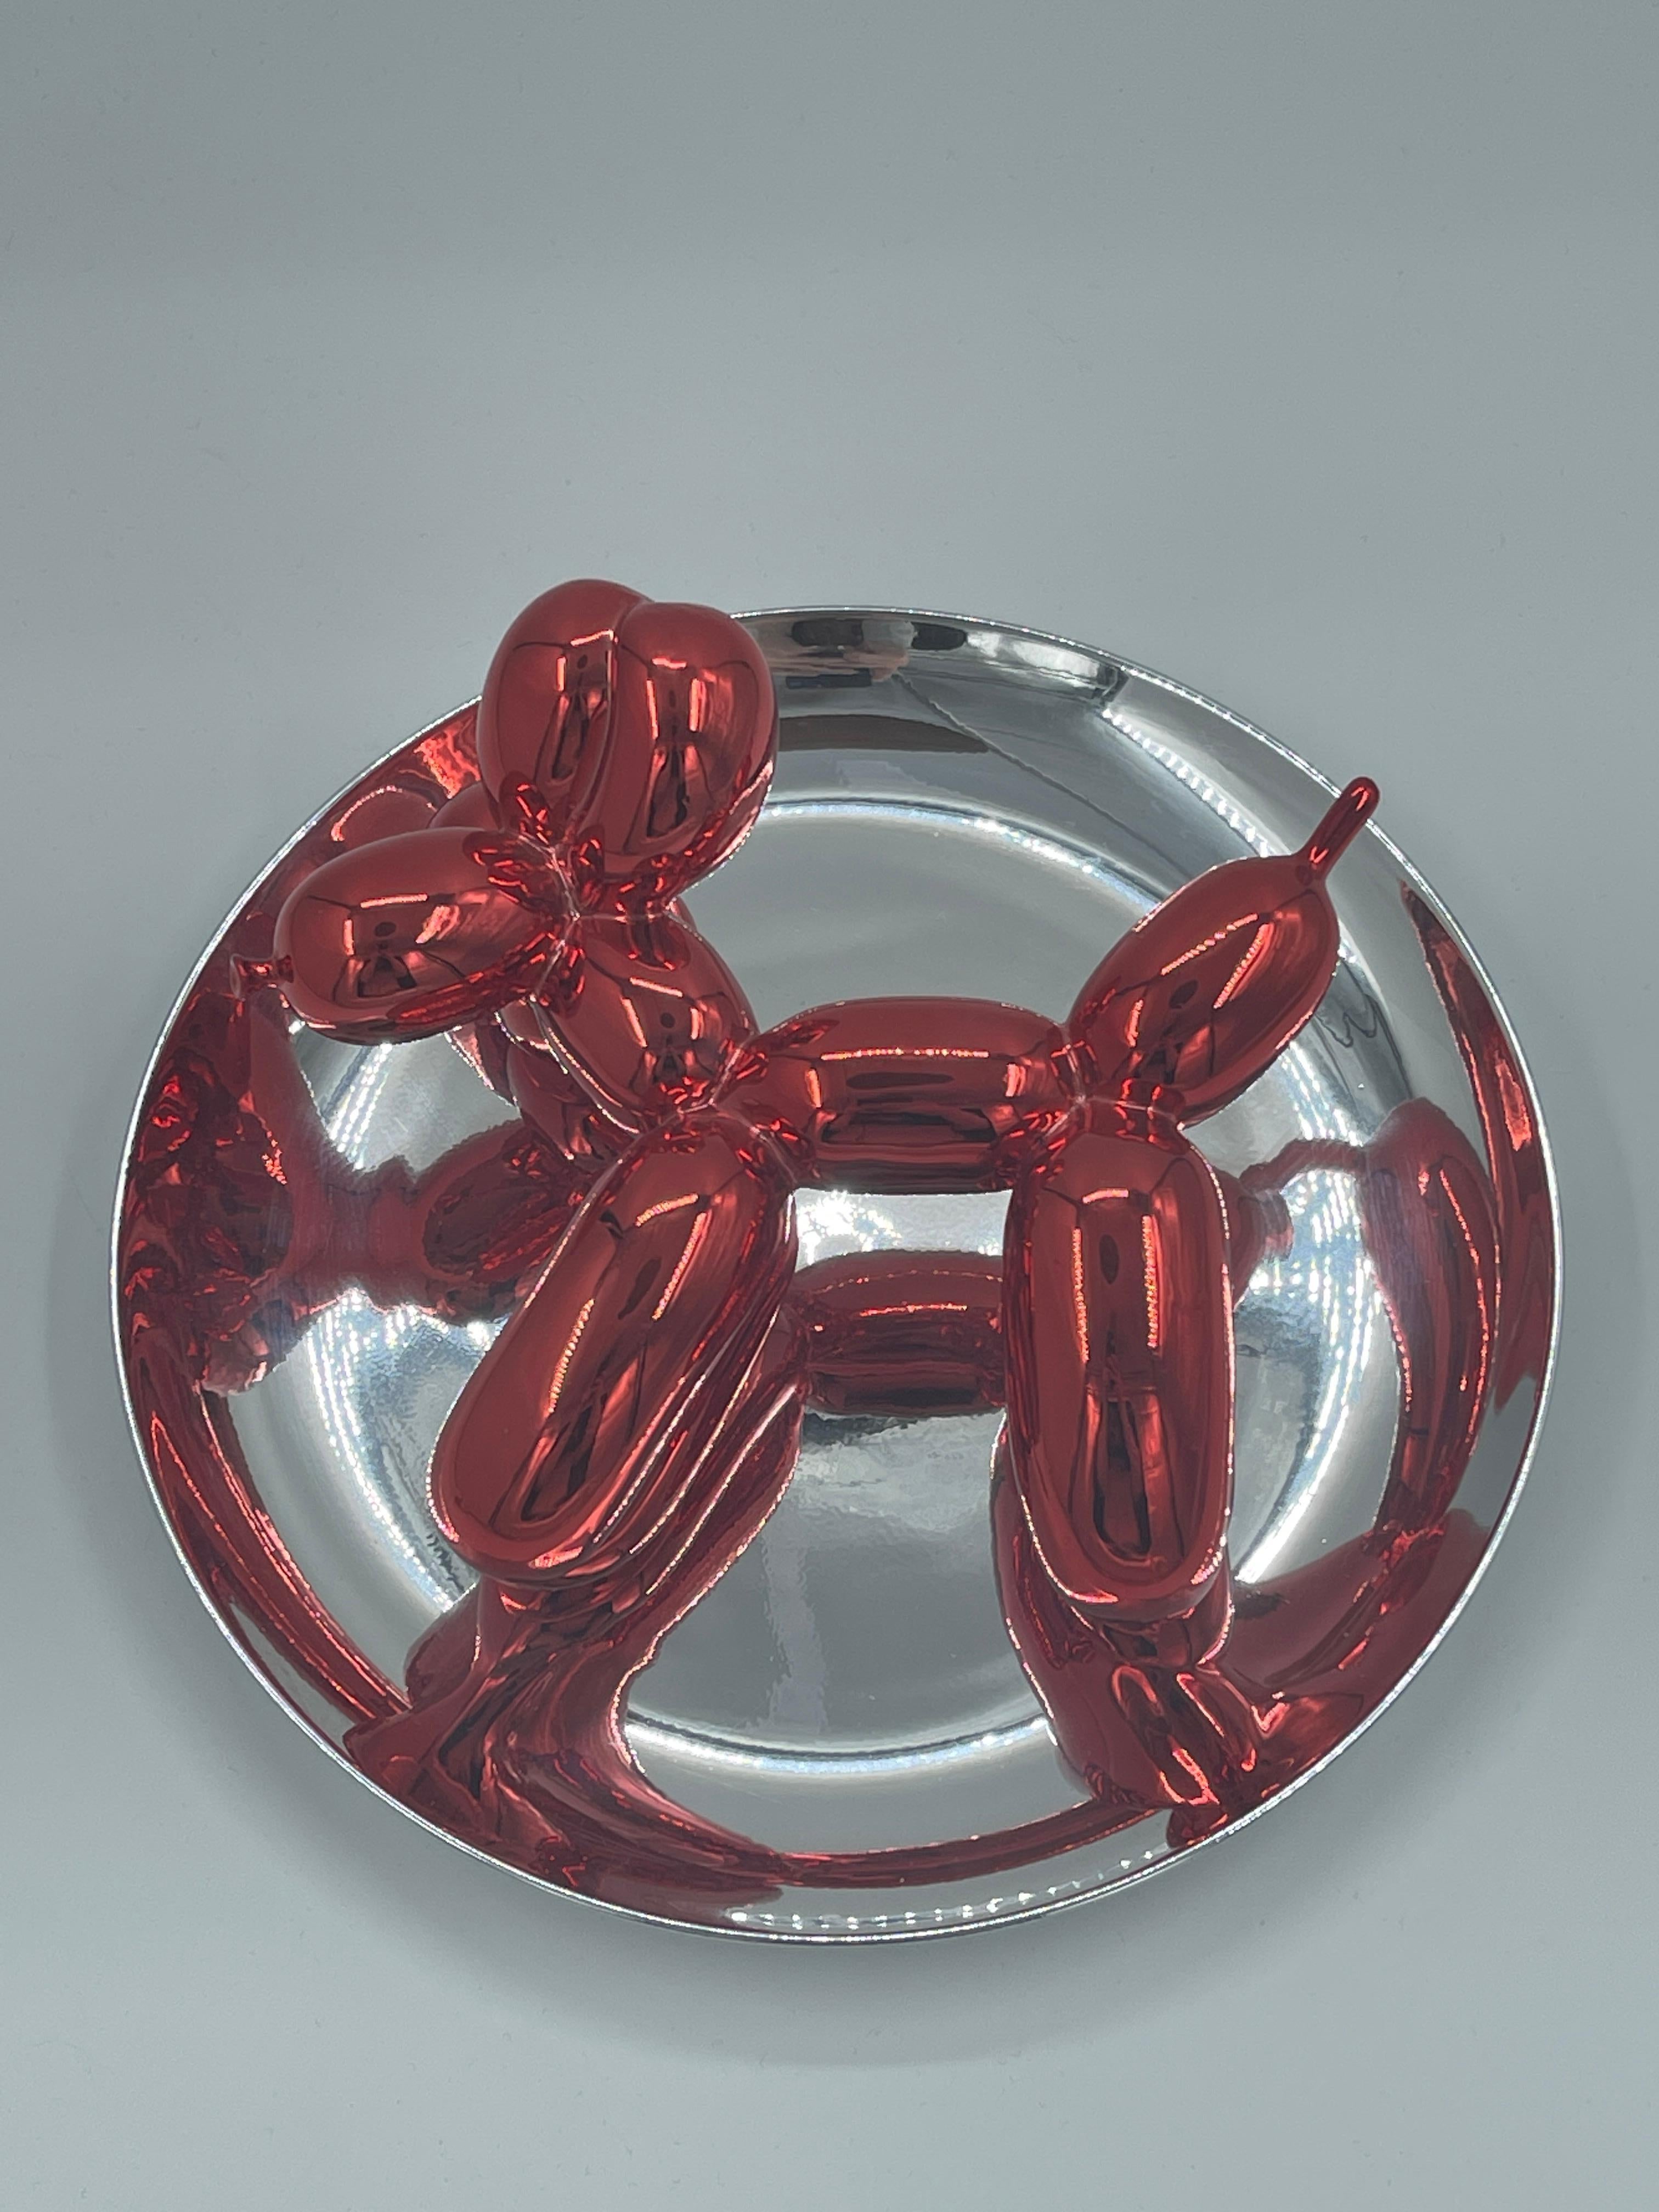 Metallischer Porzellanteller in Rot und Silber, hergestellt 1995, nummeriert 723/2300 auf dem Label unter dem Teller. Herausgegeben vom Museum of Contemporary Art, Los Angeles, mit Originalverpackung und ohne den Plastikständer. 